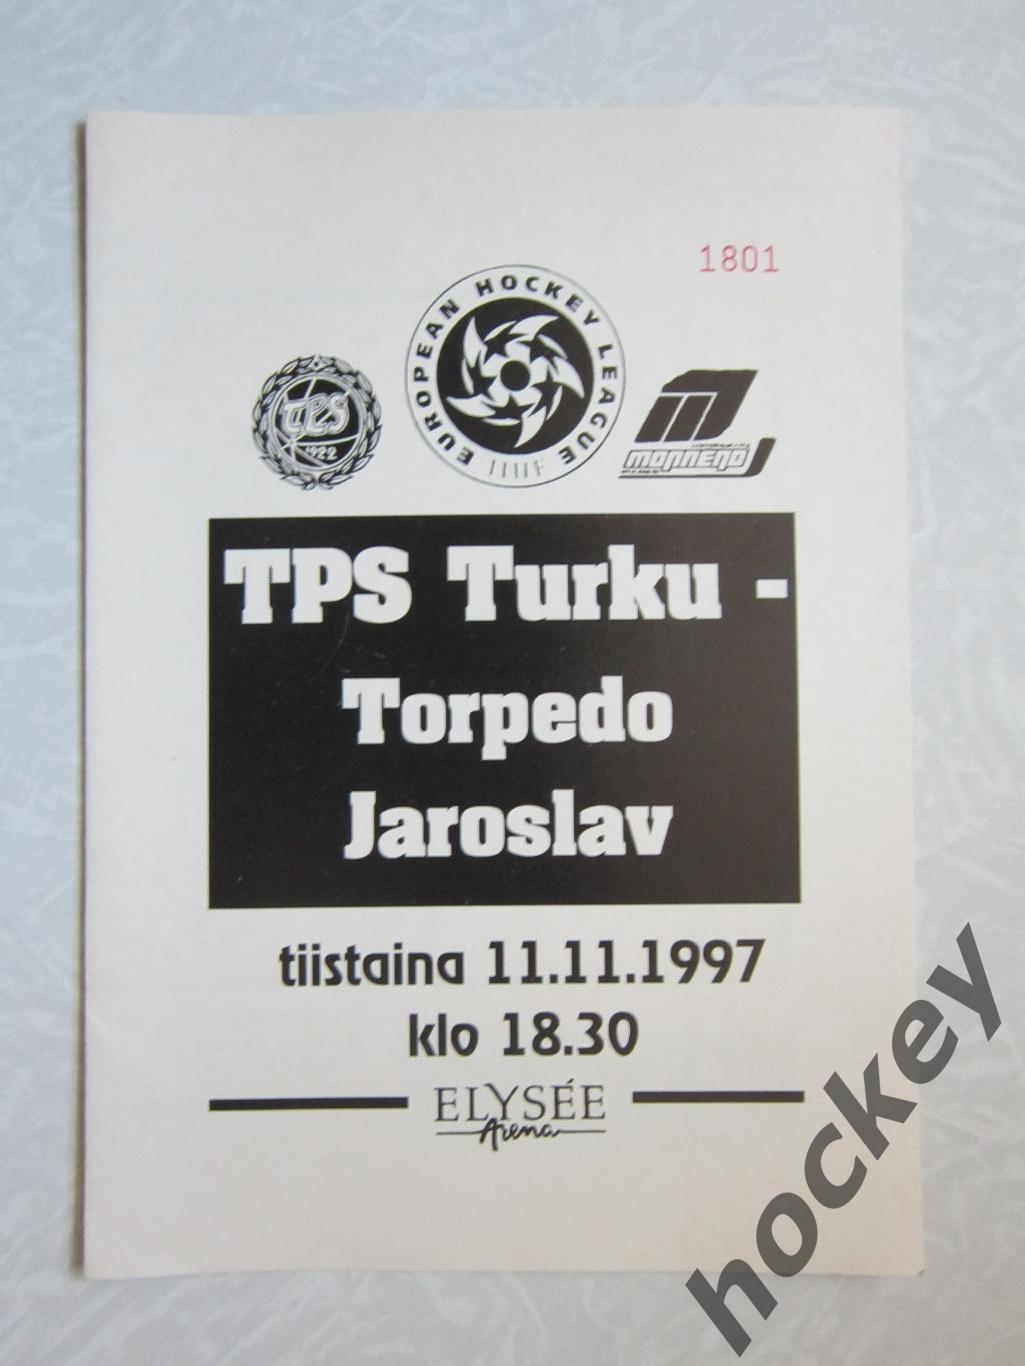 ТПС Турку Финляндия - Торпедо Ярославль 11.11.1997